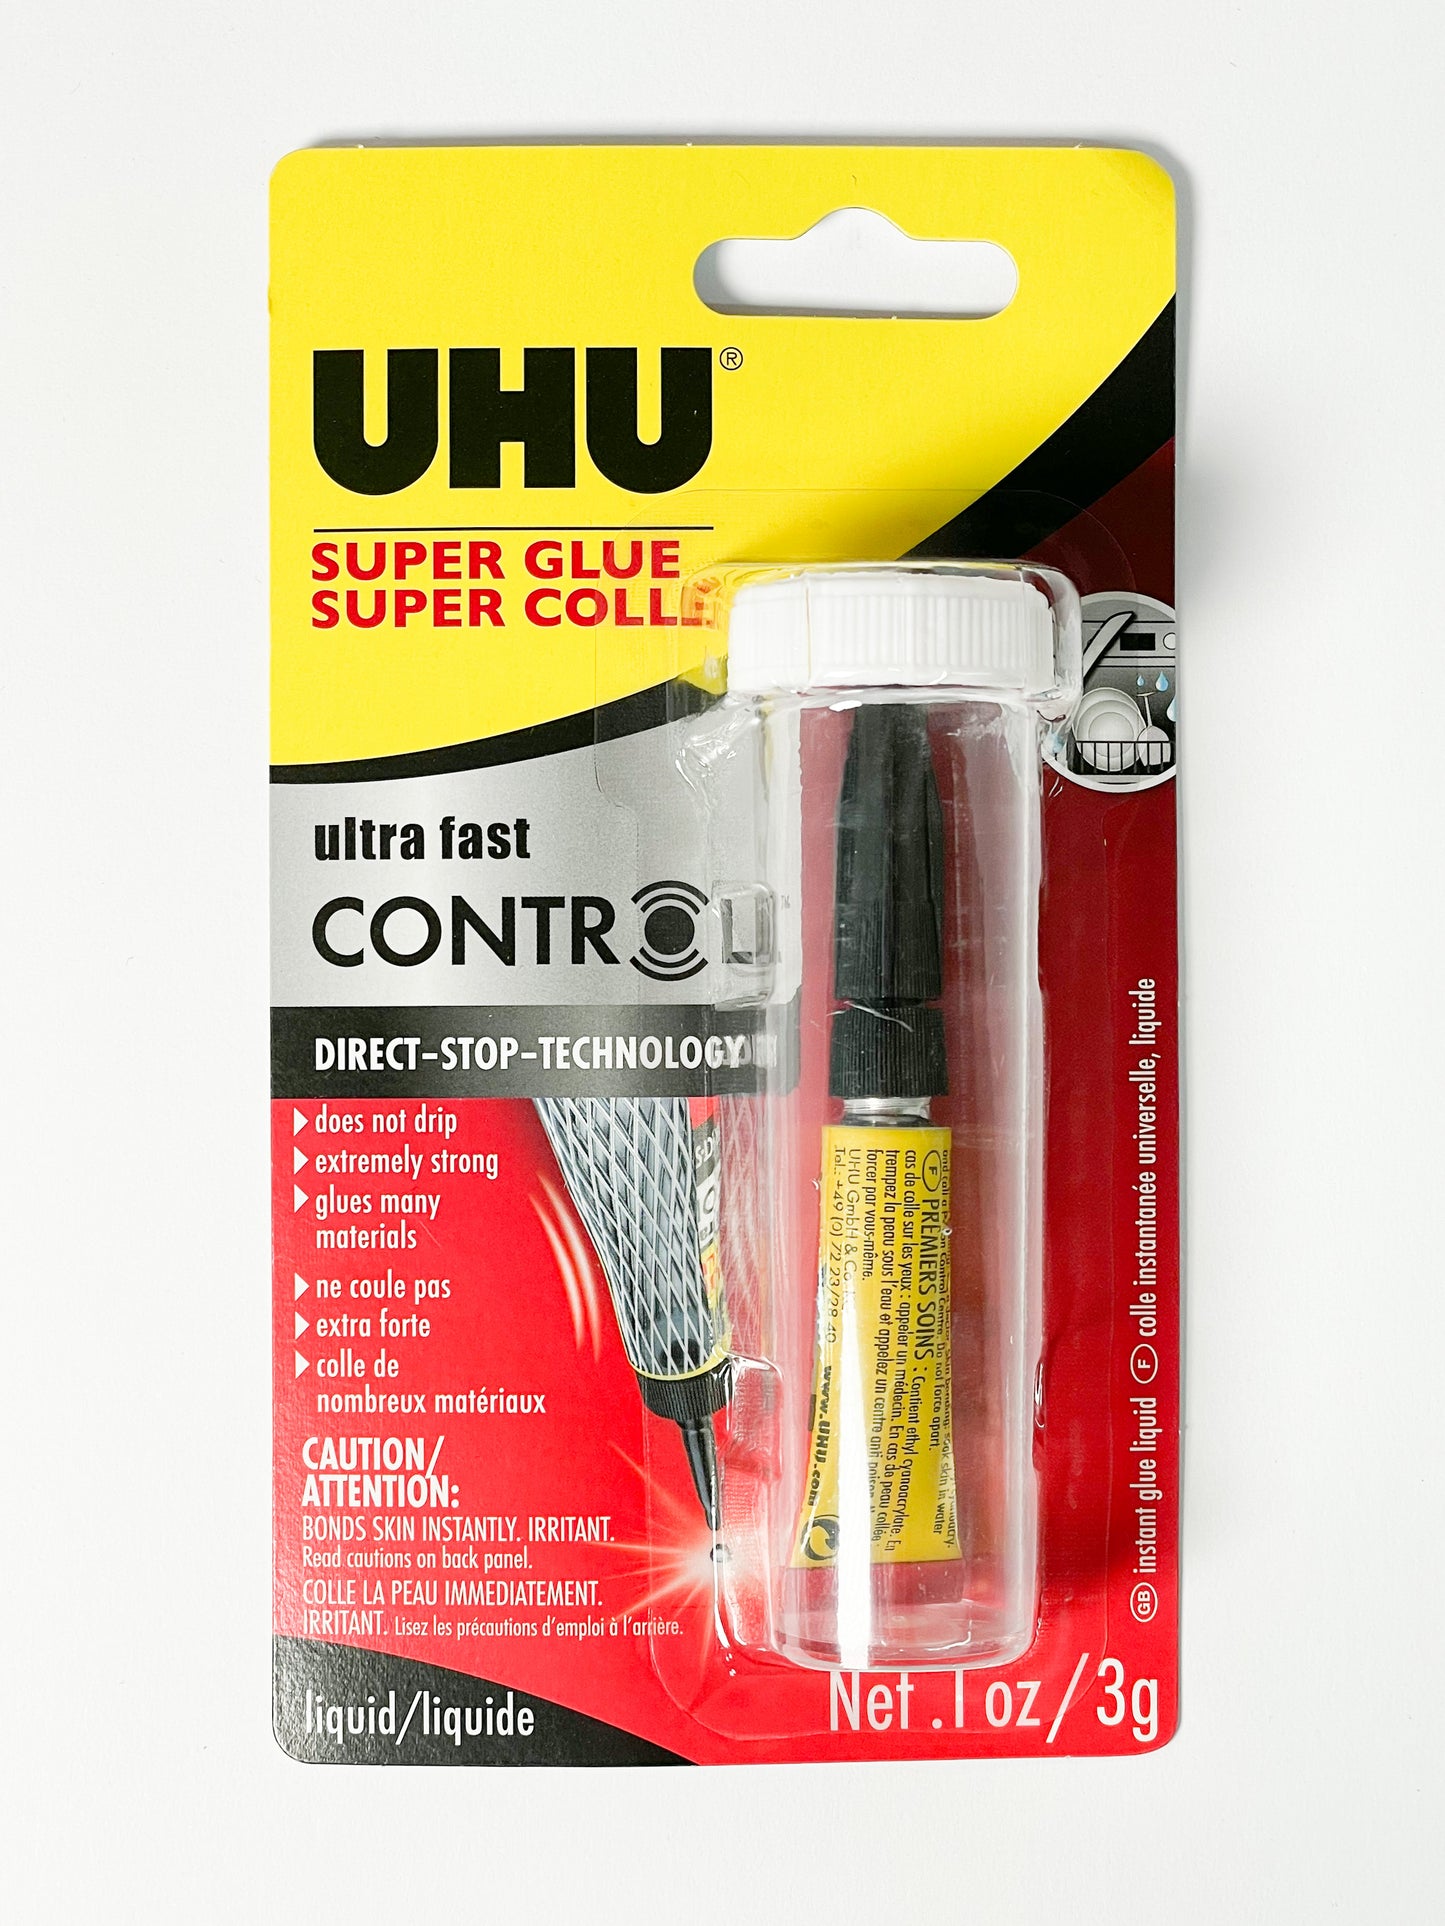 UHU® Super Glue Ultra Fast Control™ (0.1 oz. tube)